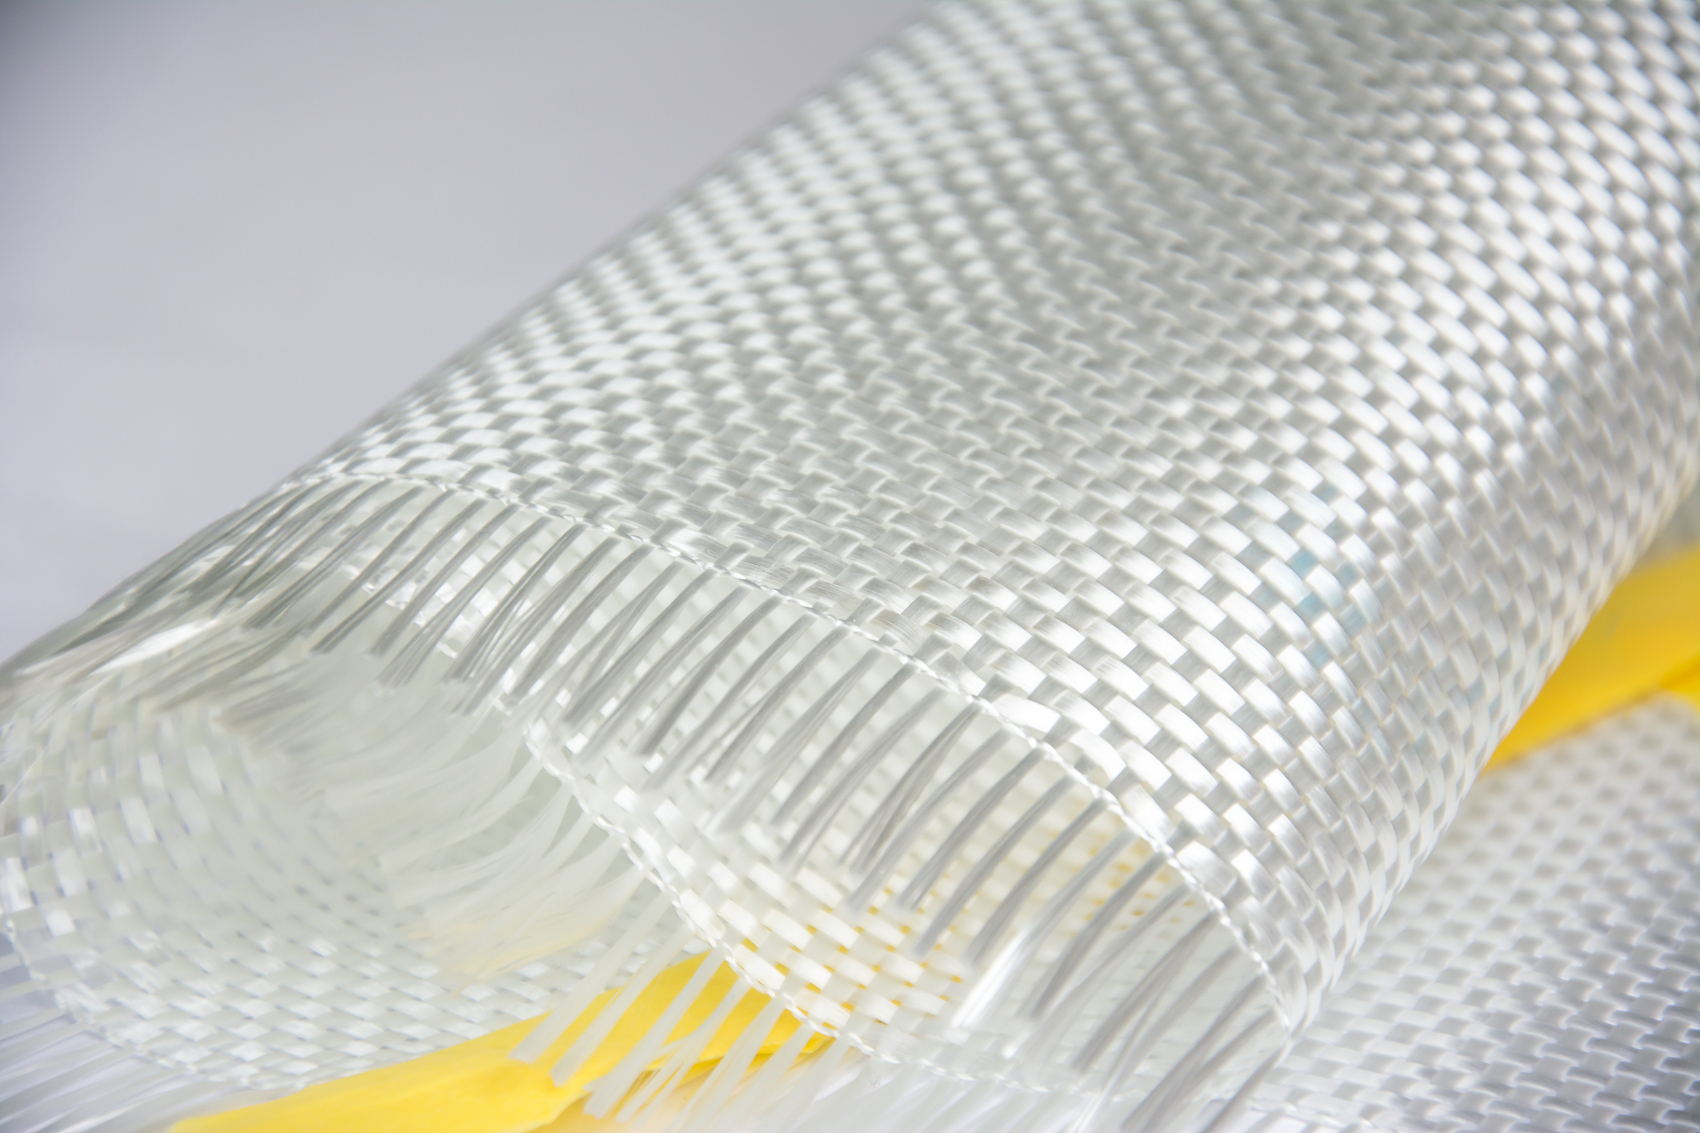 Roving tessuto in fibra di vetro E-glass da 200 g